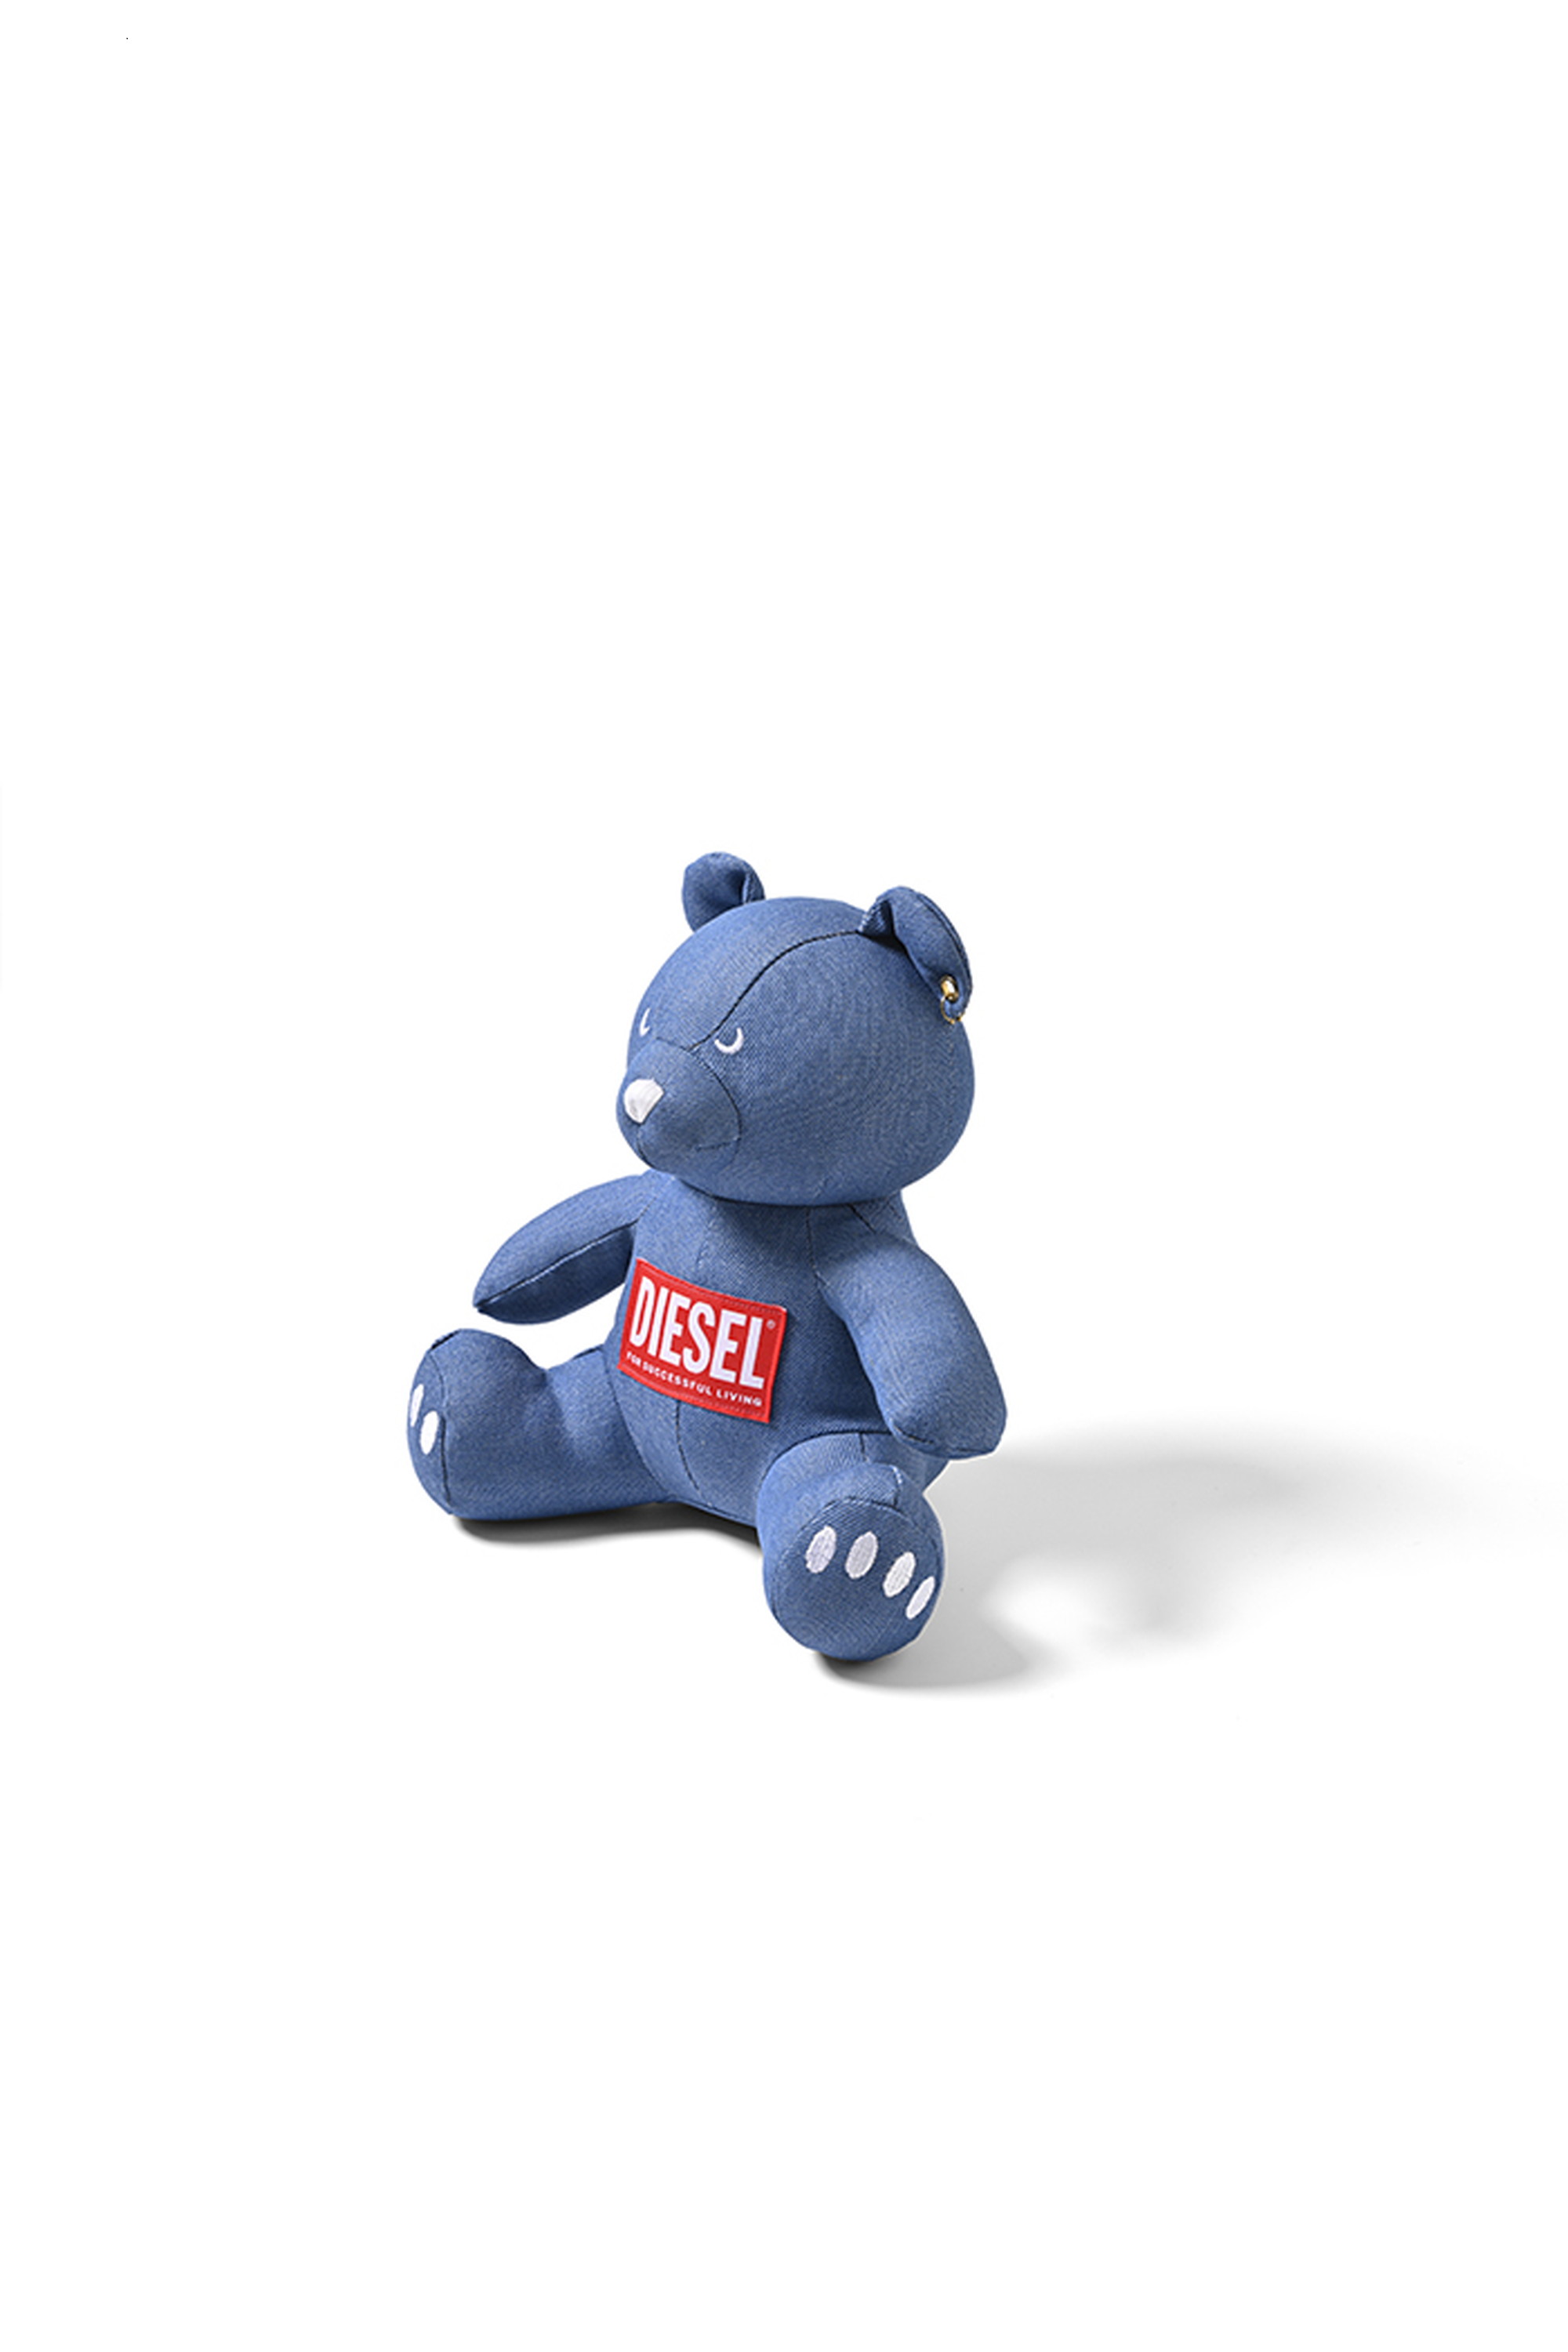 Diesel - DIESEL BEAR (LIGHT BLUE), ブルー - Image 2